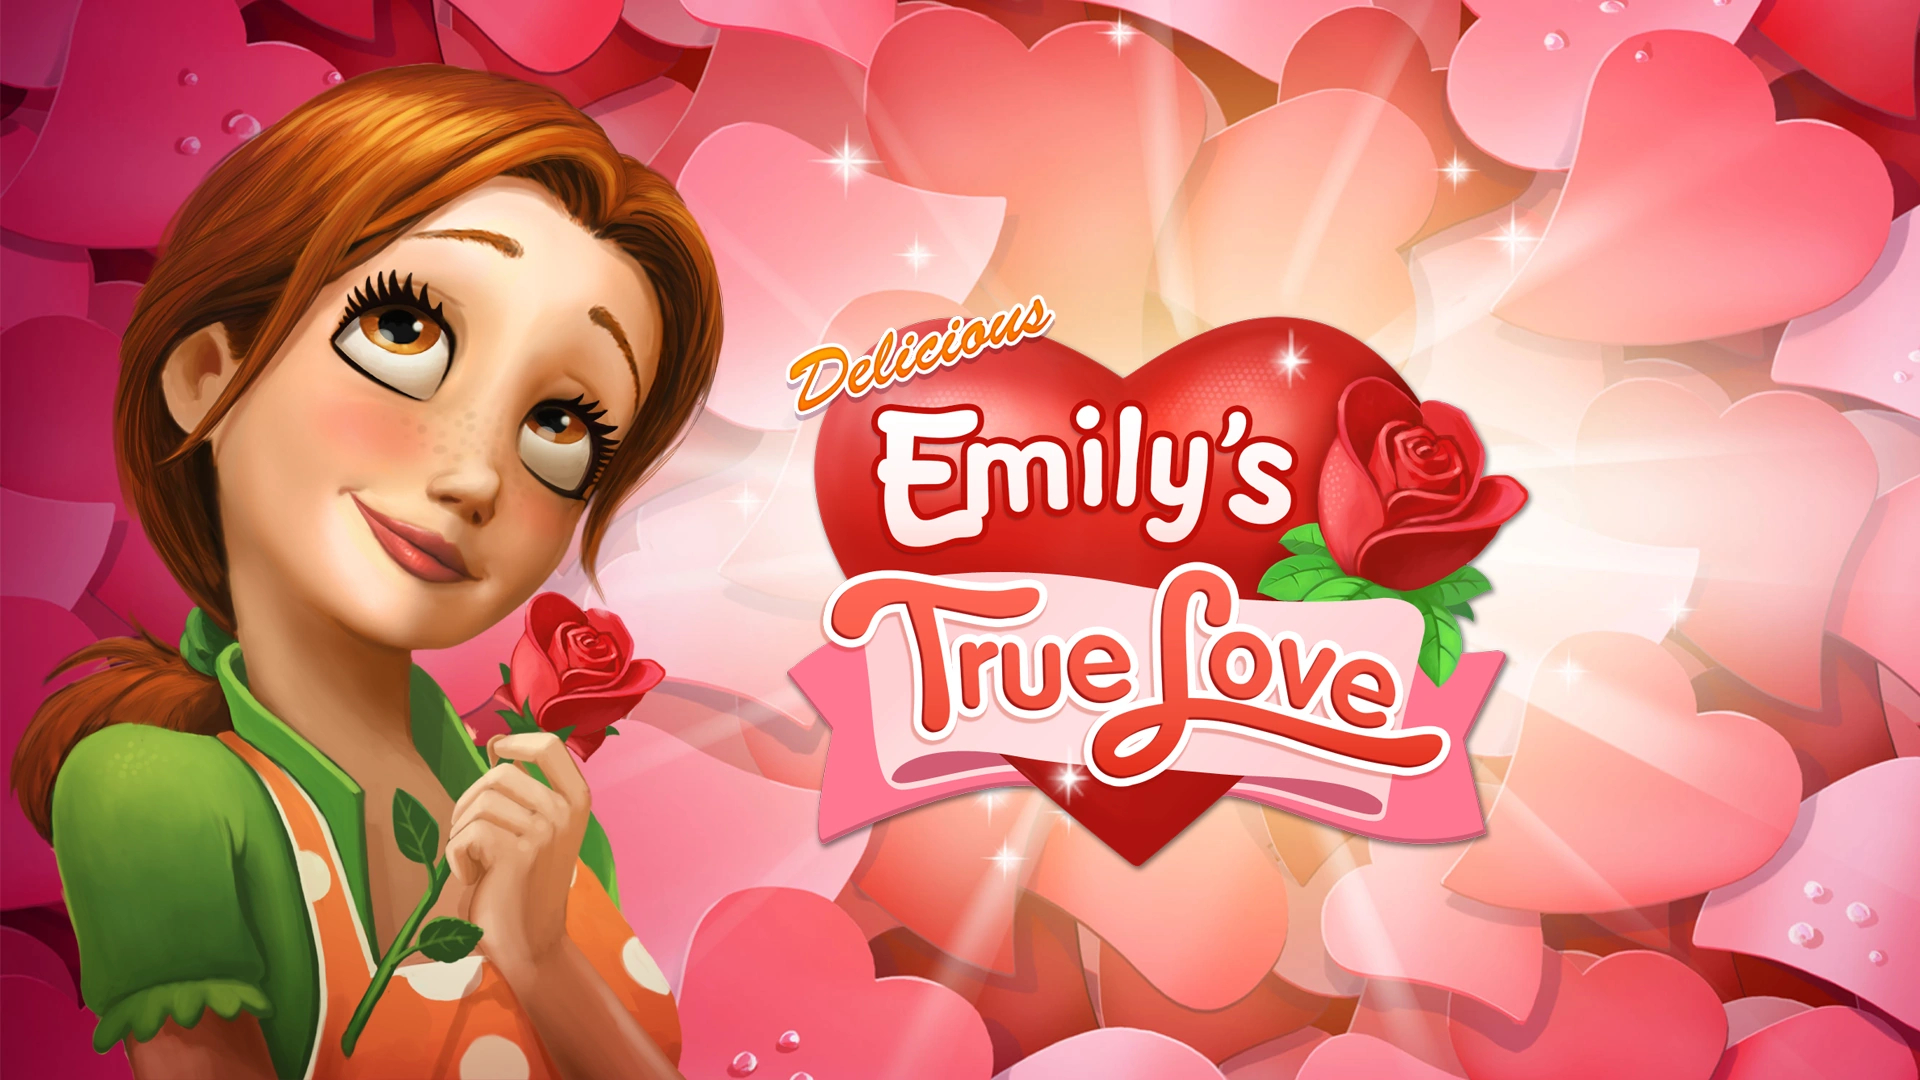 1920x1080 Delicious Emily's True Love | Delicious Emily's Wiki | Fandom